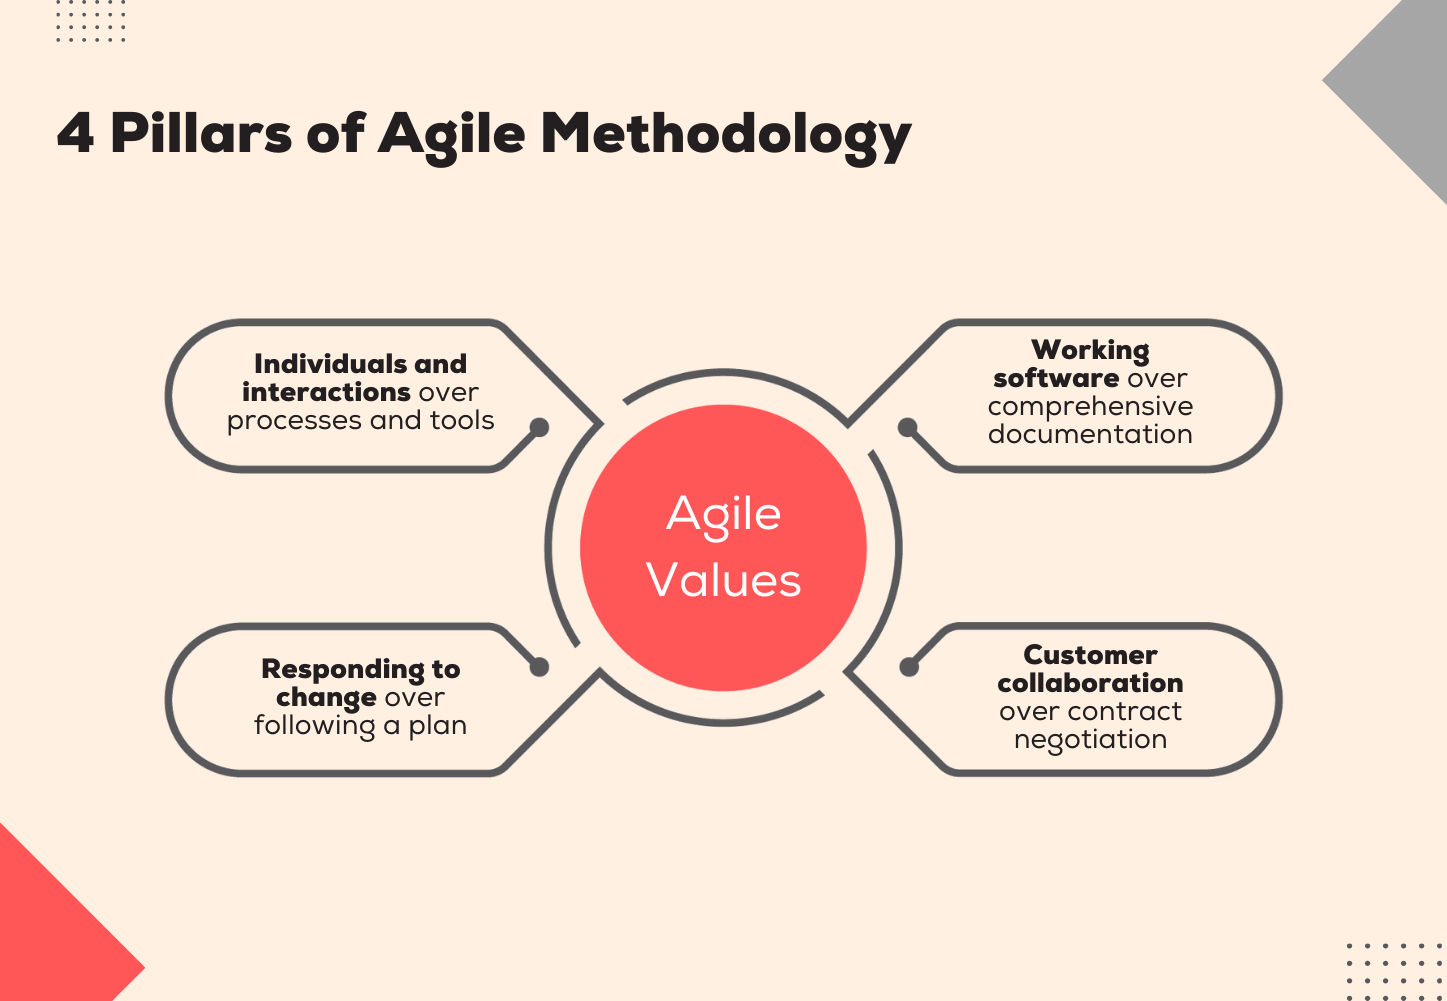 4 Pillars of Agile Methodology